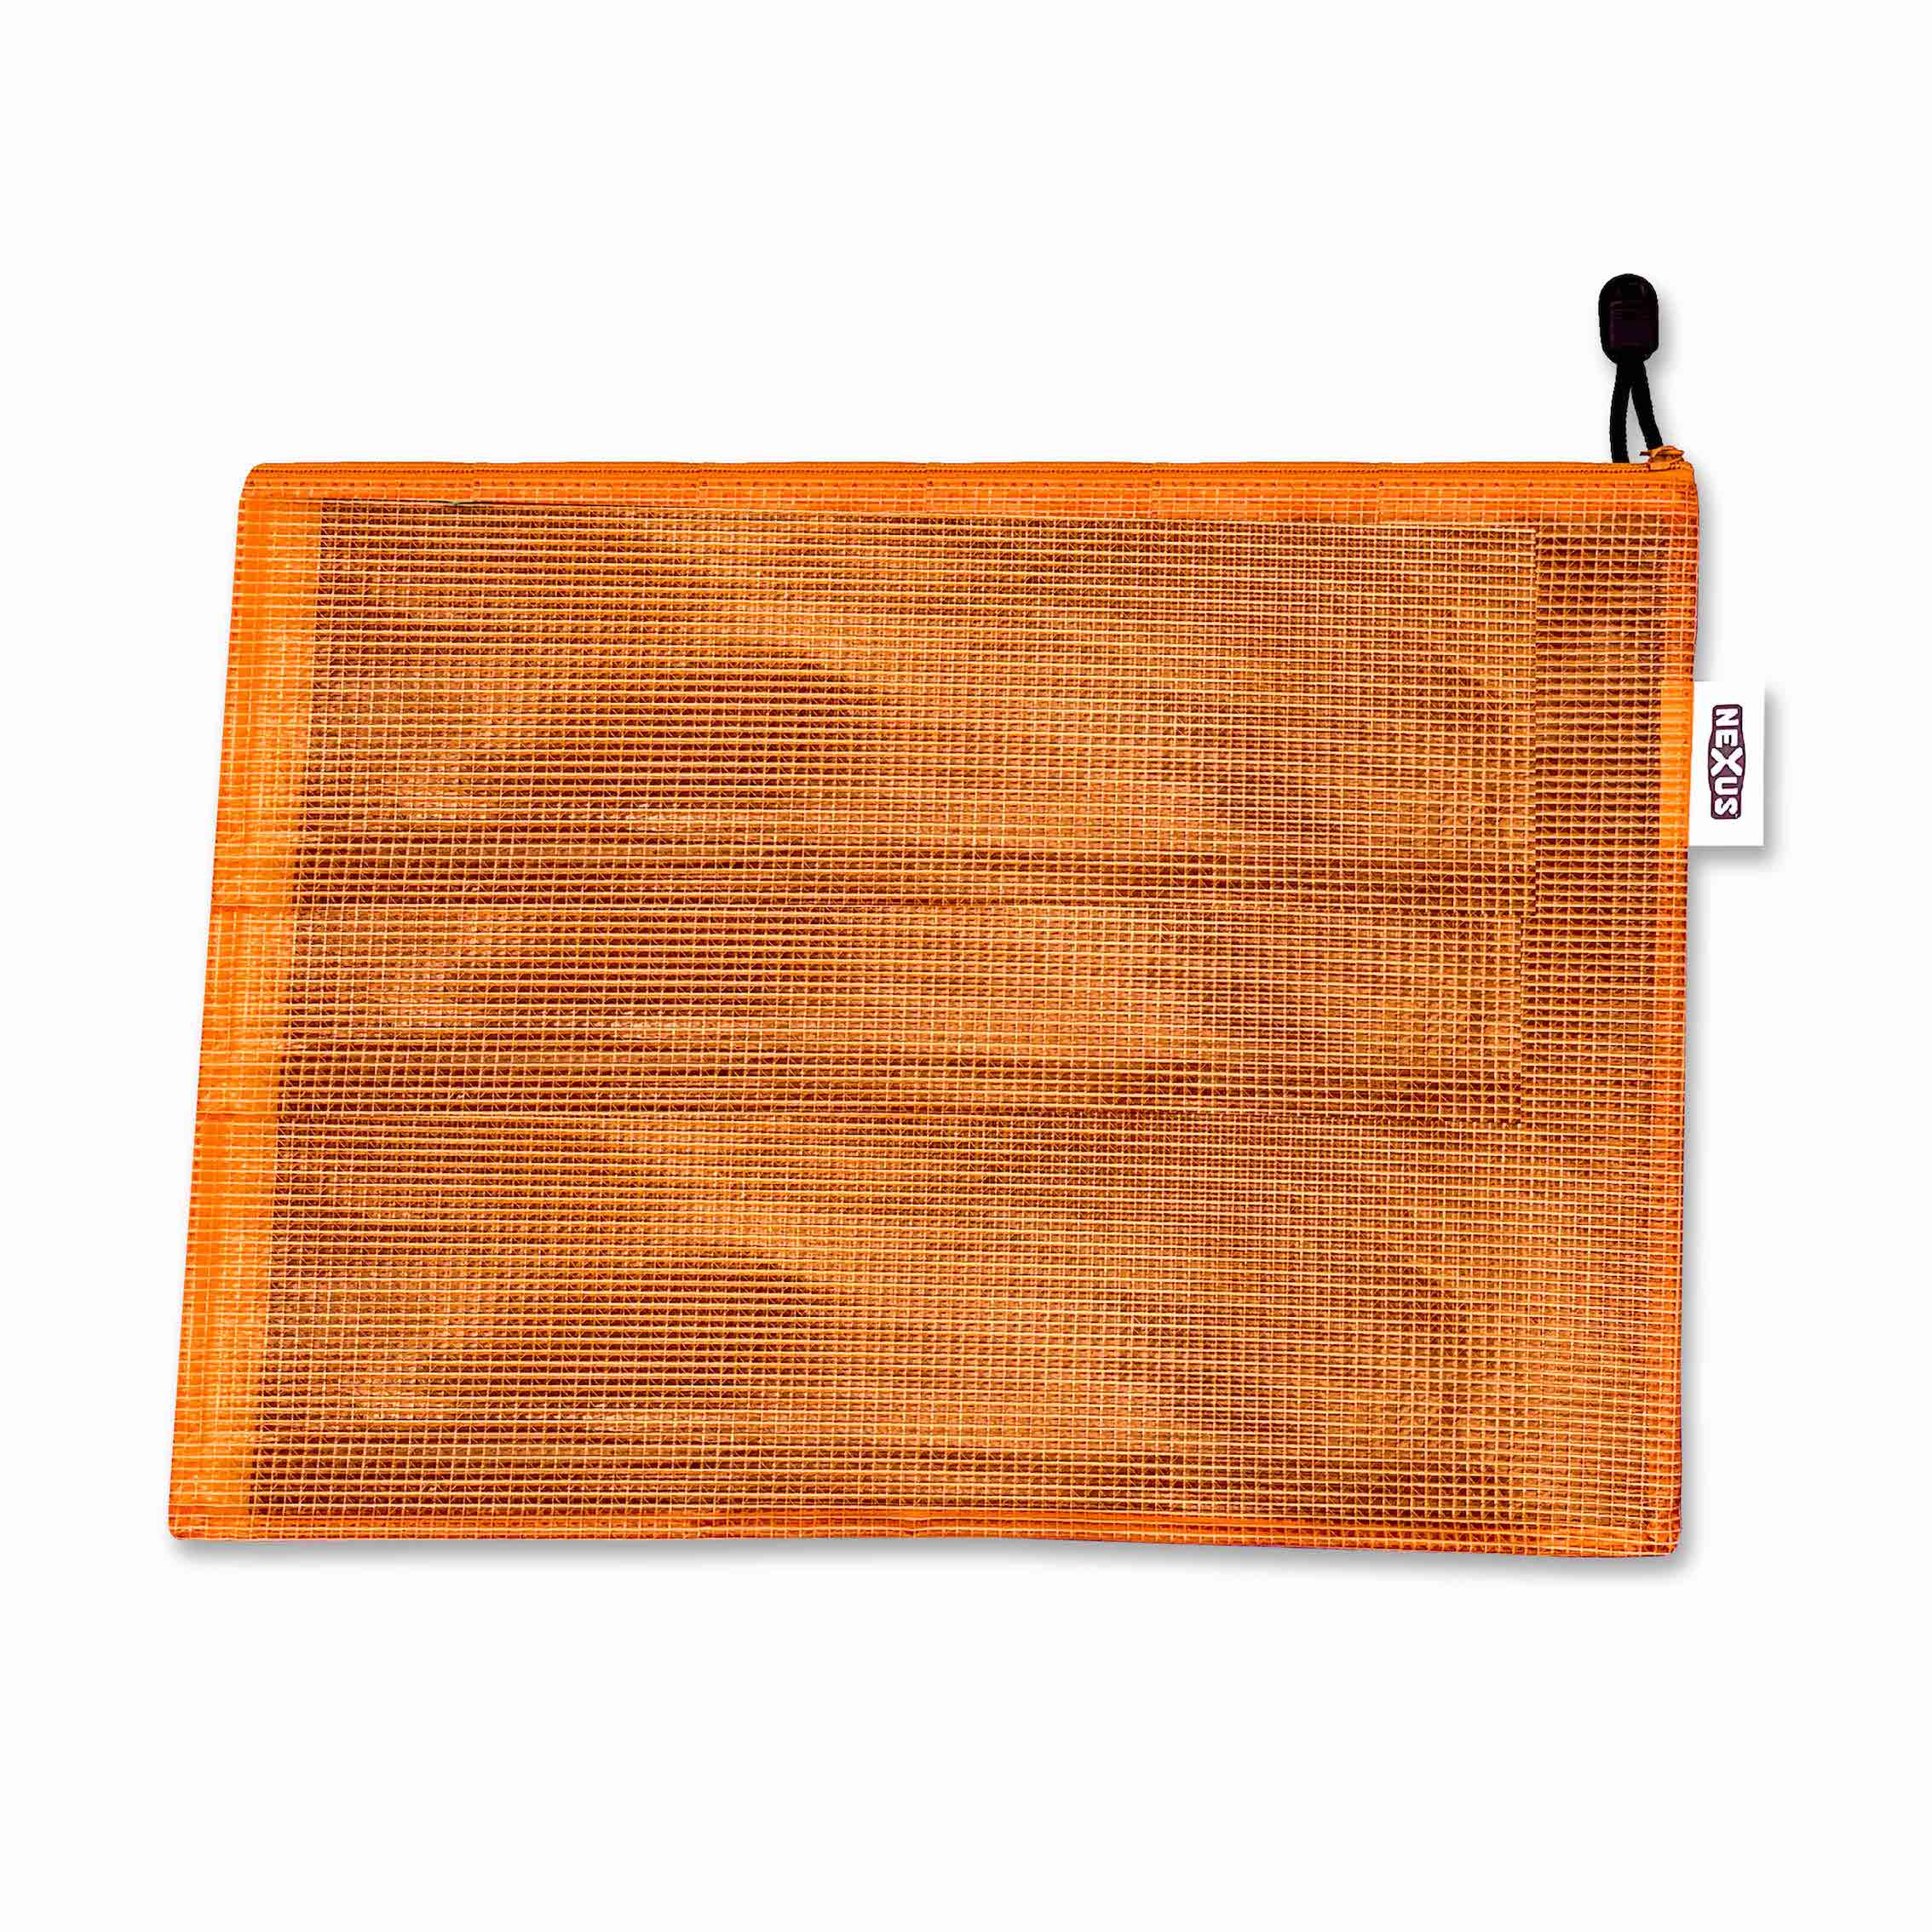 Essential Tough Kit Bag 26cm x 36 cm Orange – 1 pc